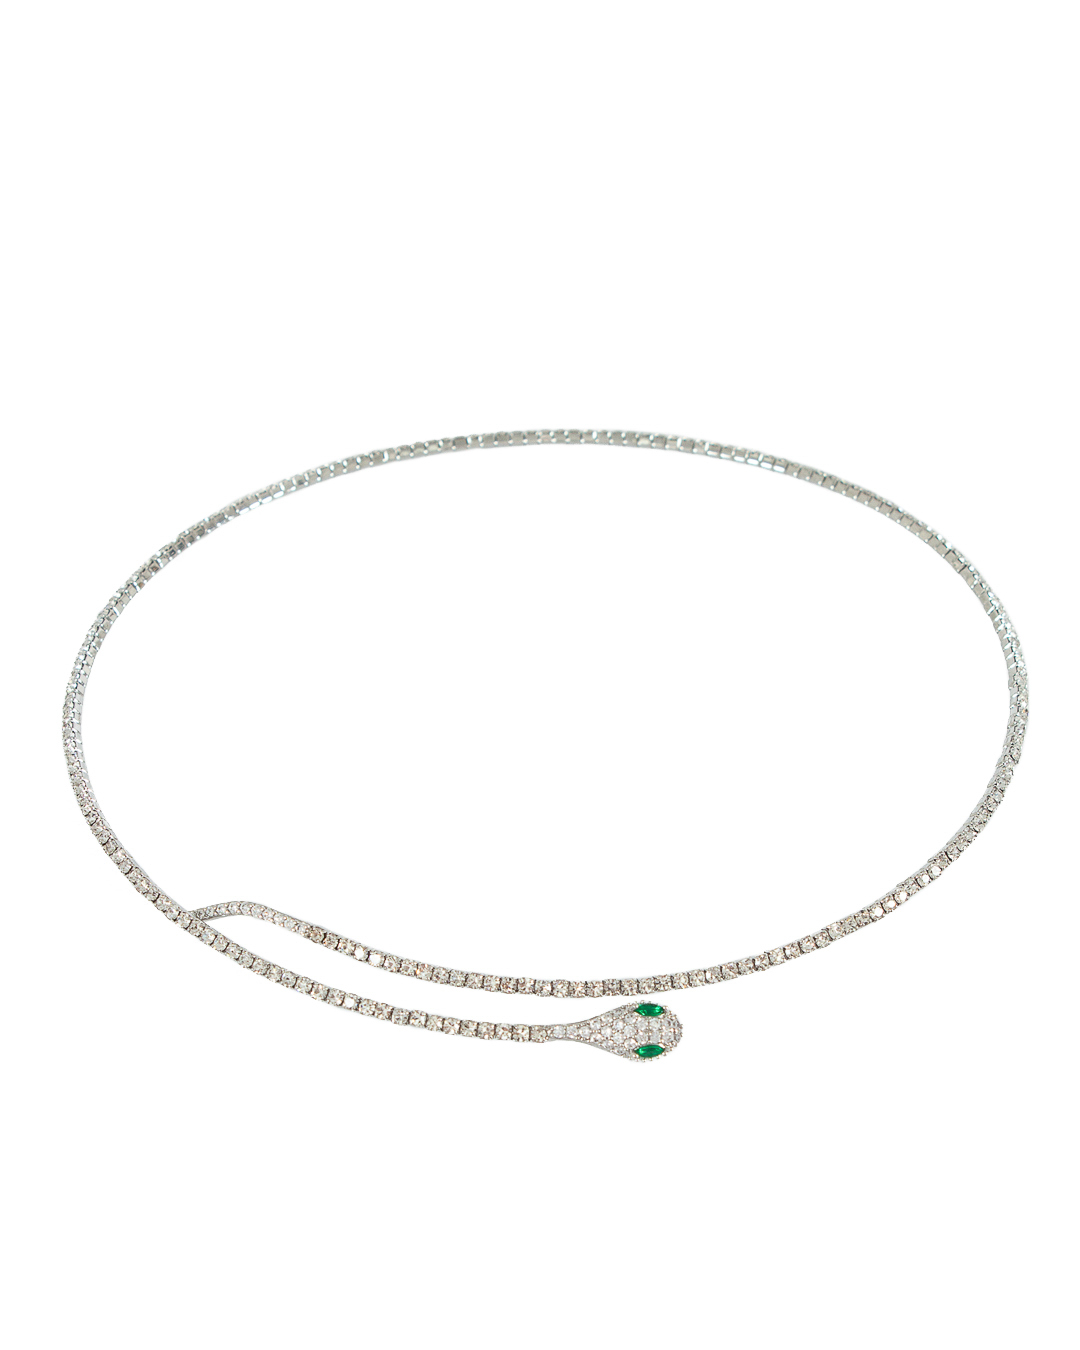 ожерелье Marina Fossati A20 серебряный+прозрачный UNI, размер UNI, цвет серебряный+прозрачный A20 серебряный+прозрачный UNI - фото 1